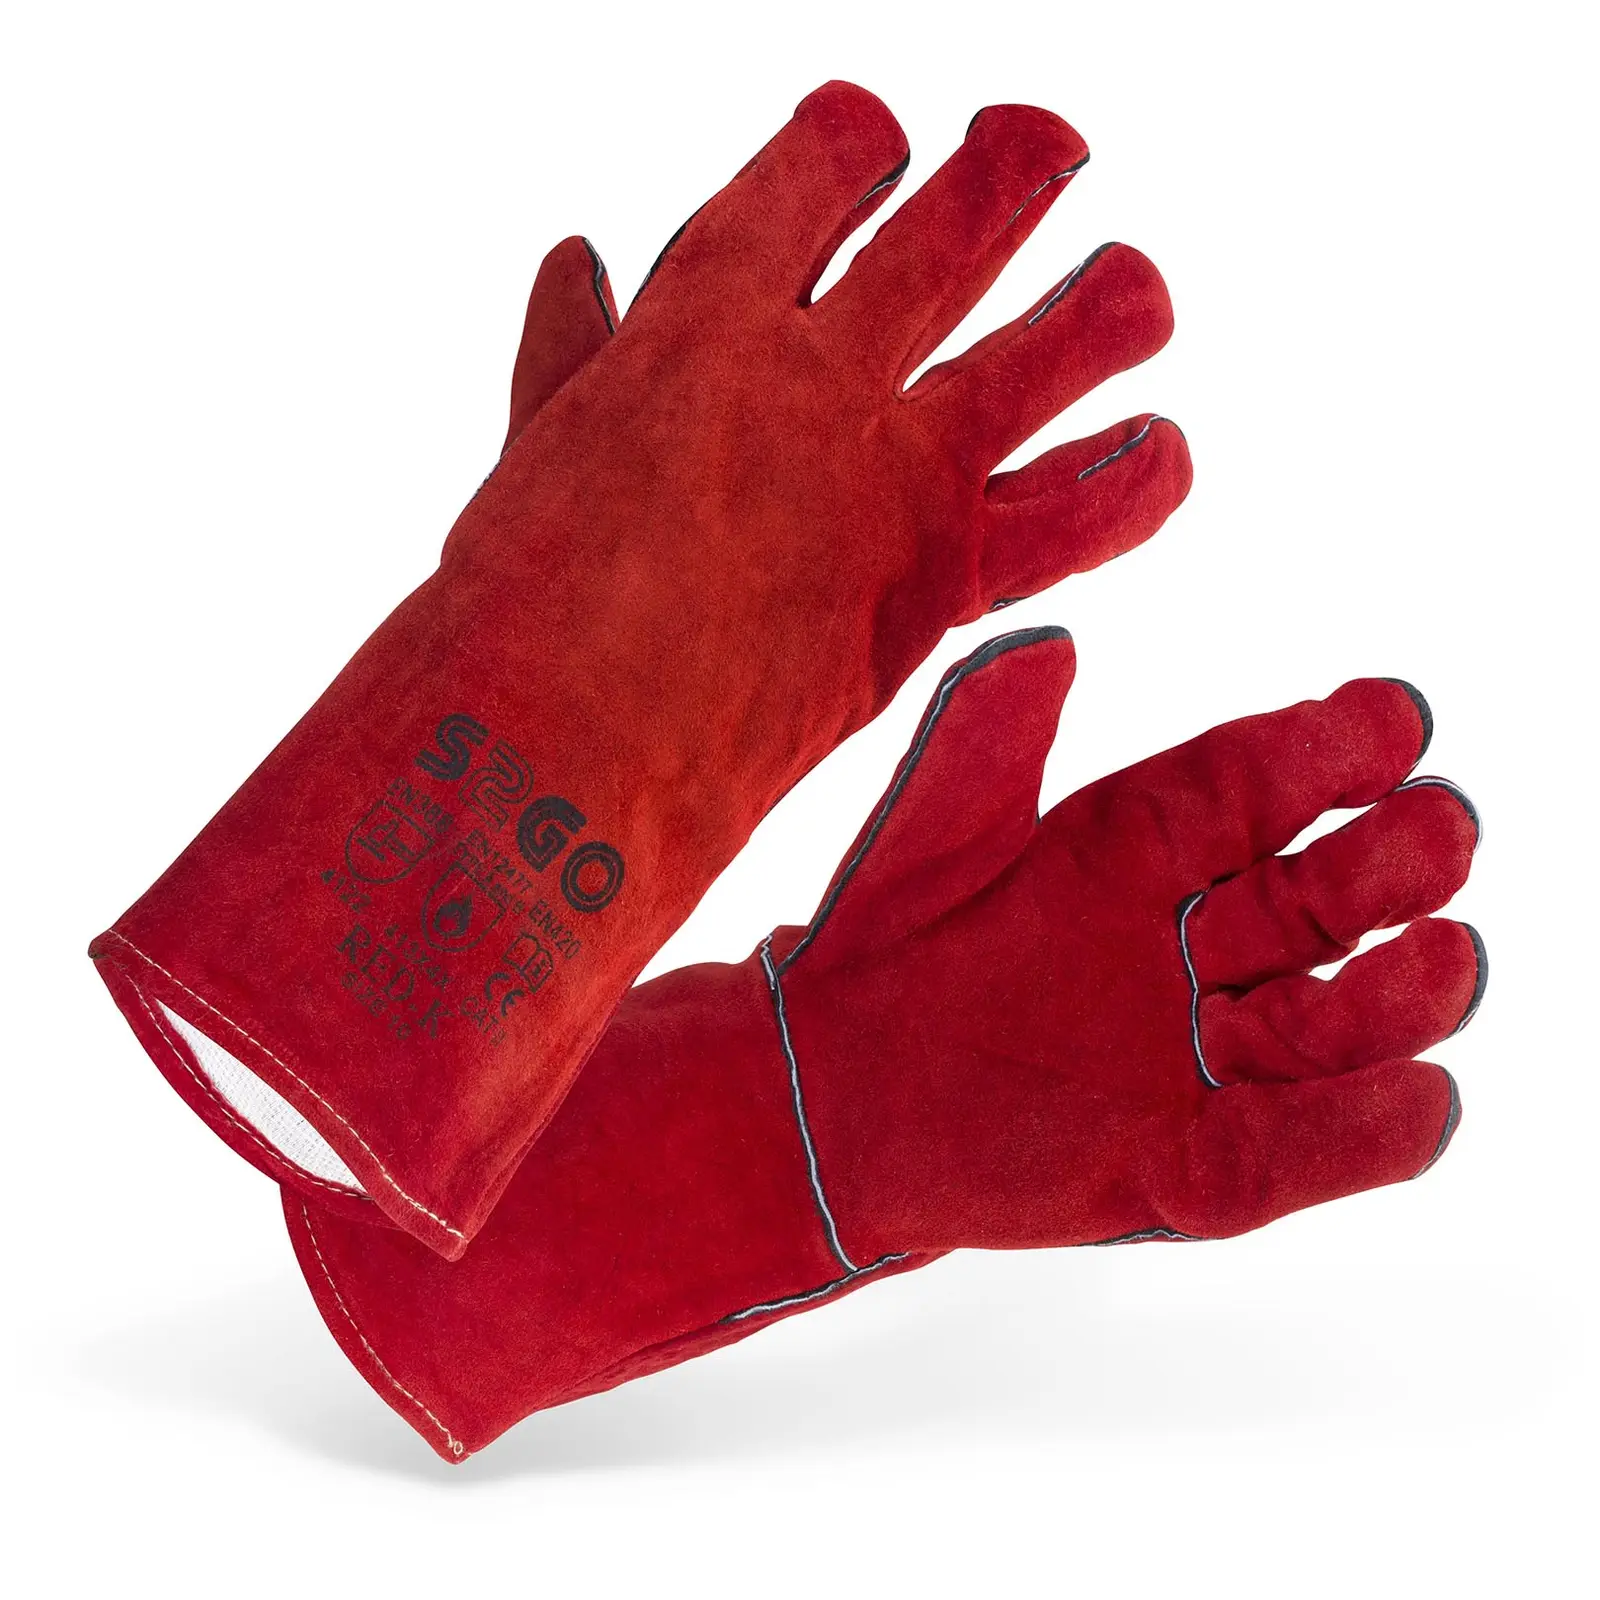 Welding Gloves Type A/B - size 10 / XL